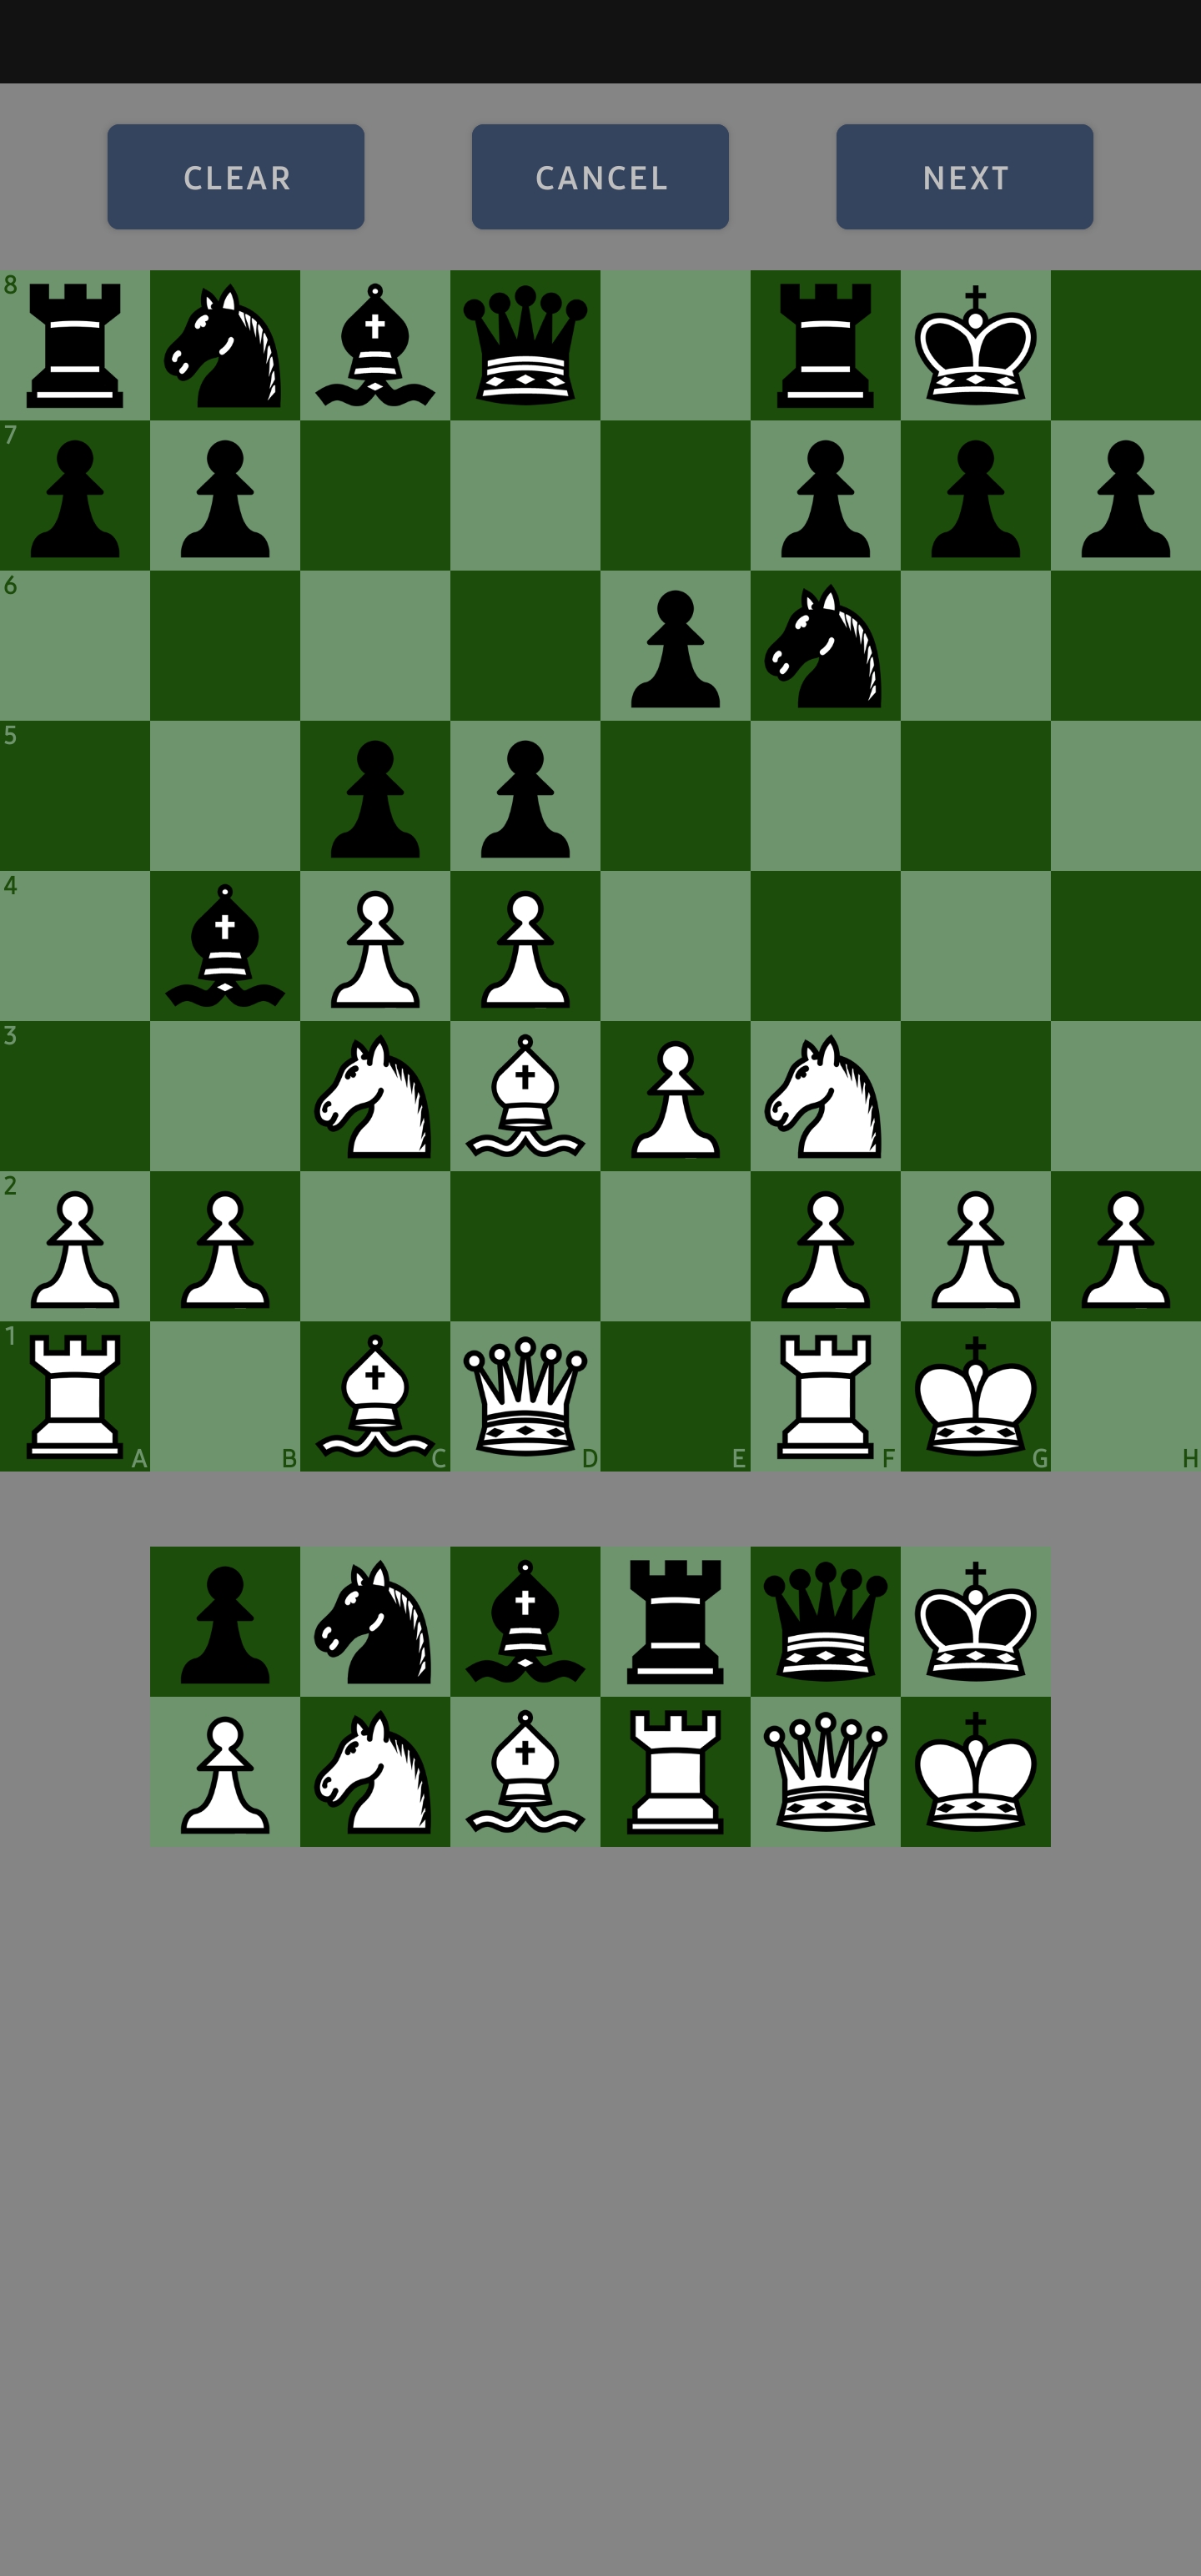 Hiarcs Chess for Android Phone Screenshot